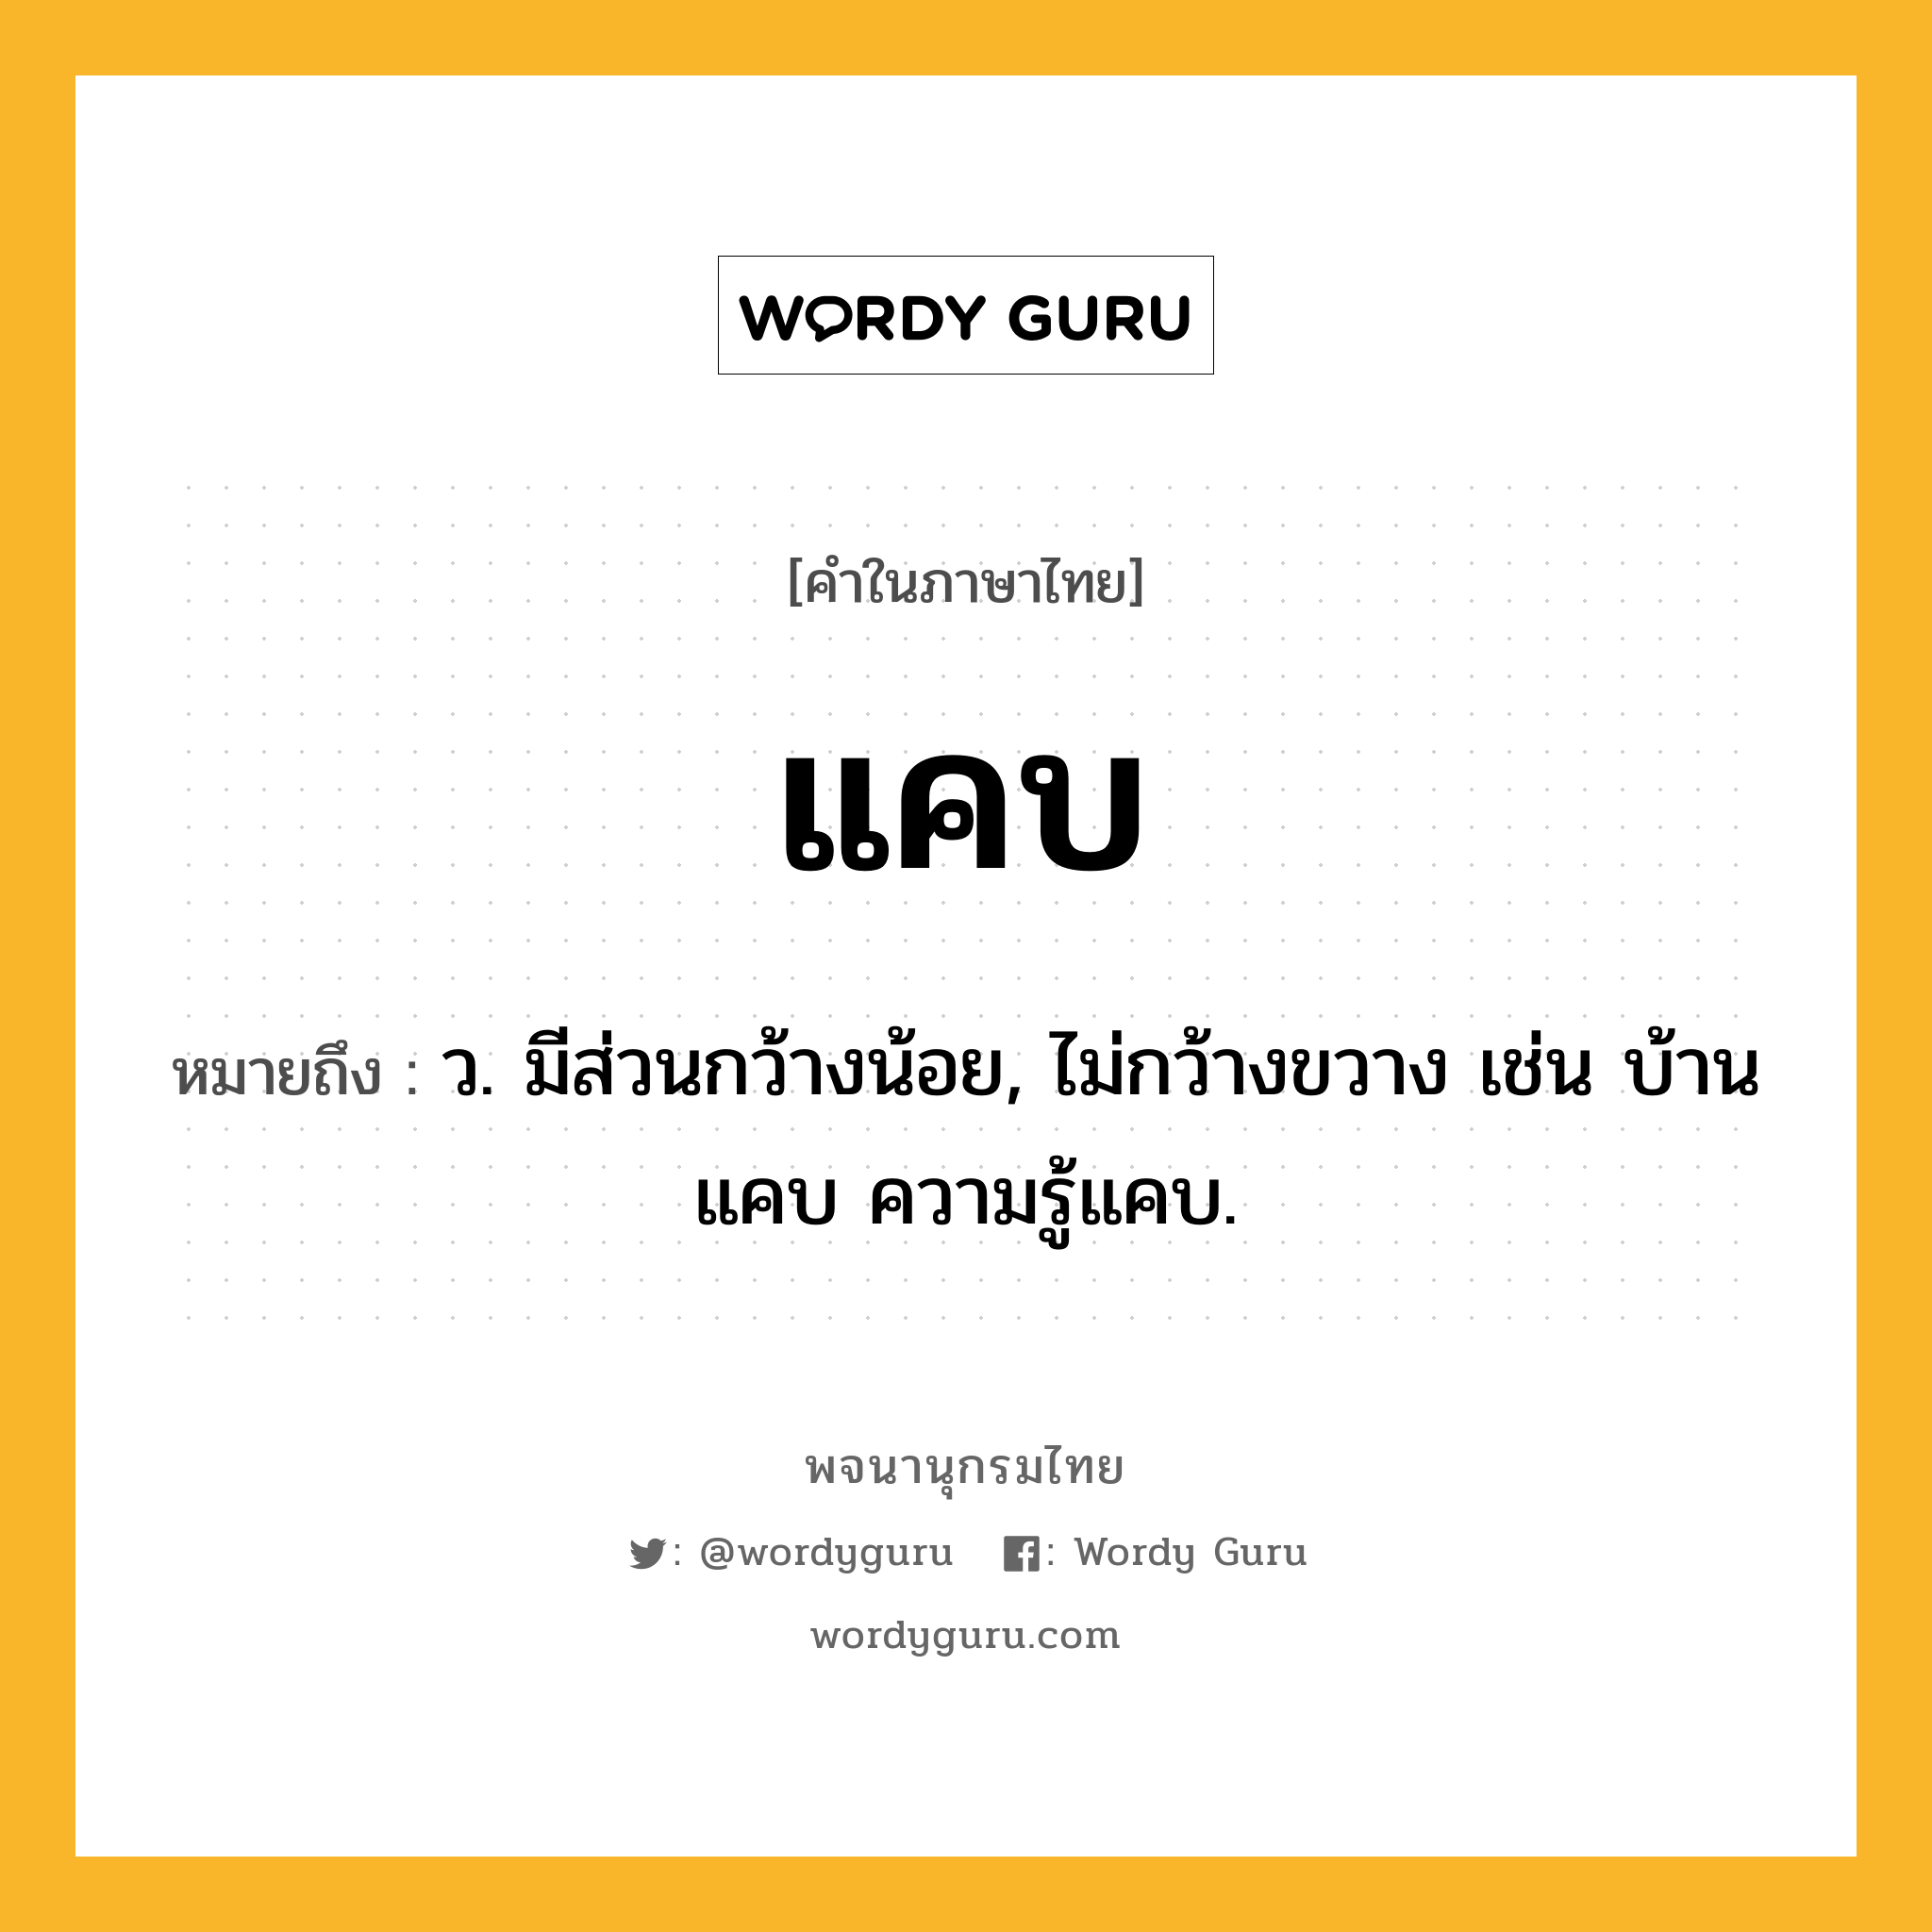 แคบ หมายถึงอะไร?, คำในภาษาไทย แคบ หมายถึง ว. มีส่วนกว้างน้อย, ไม่กว้างขวาง เช่น บ้านแคบ ความรู้แคบ.